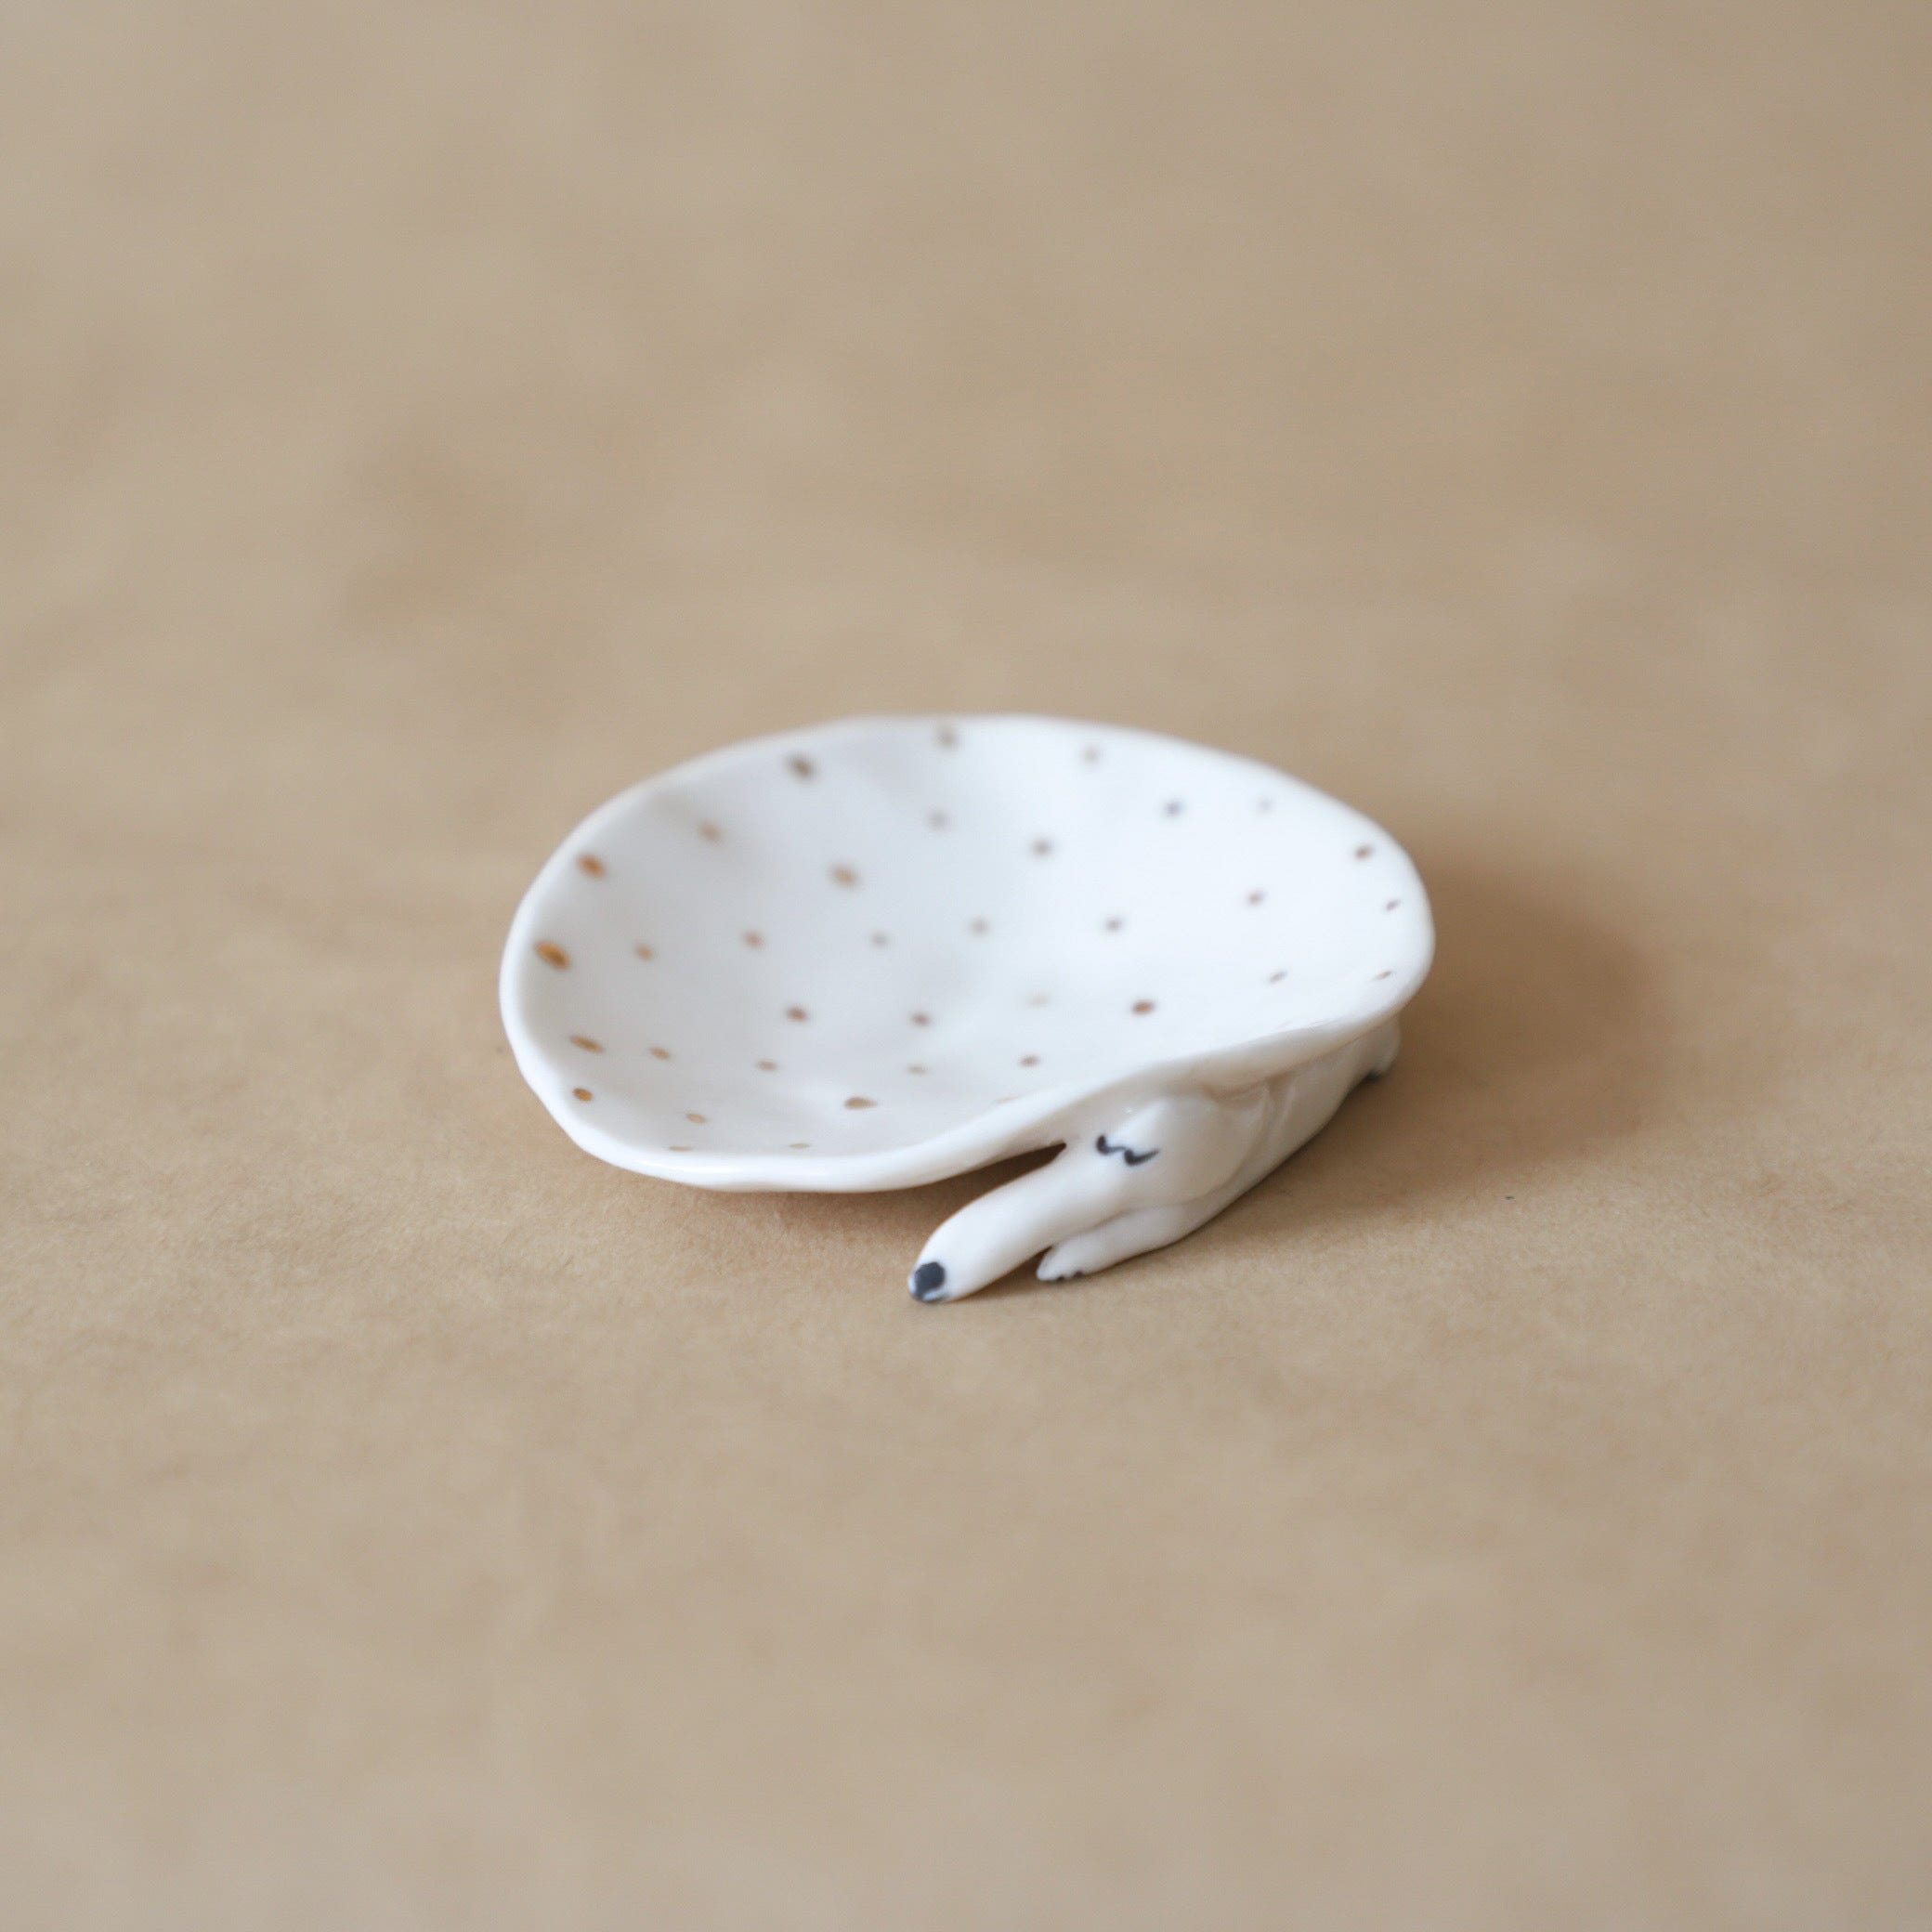 Eleonor Bostrom Ceramics Decor Mini Dog Dish with Gold Dots by Eleonor Bostrom